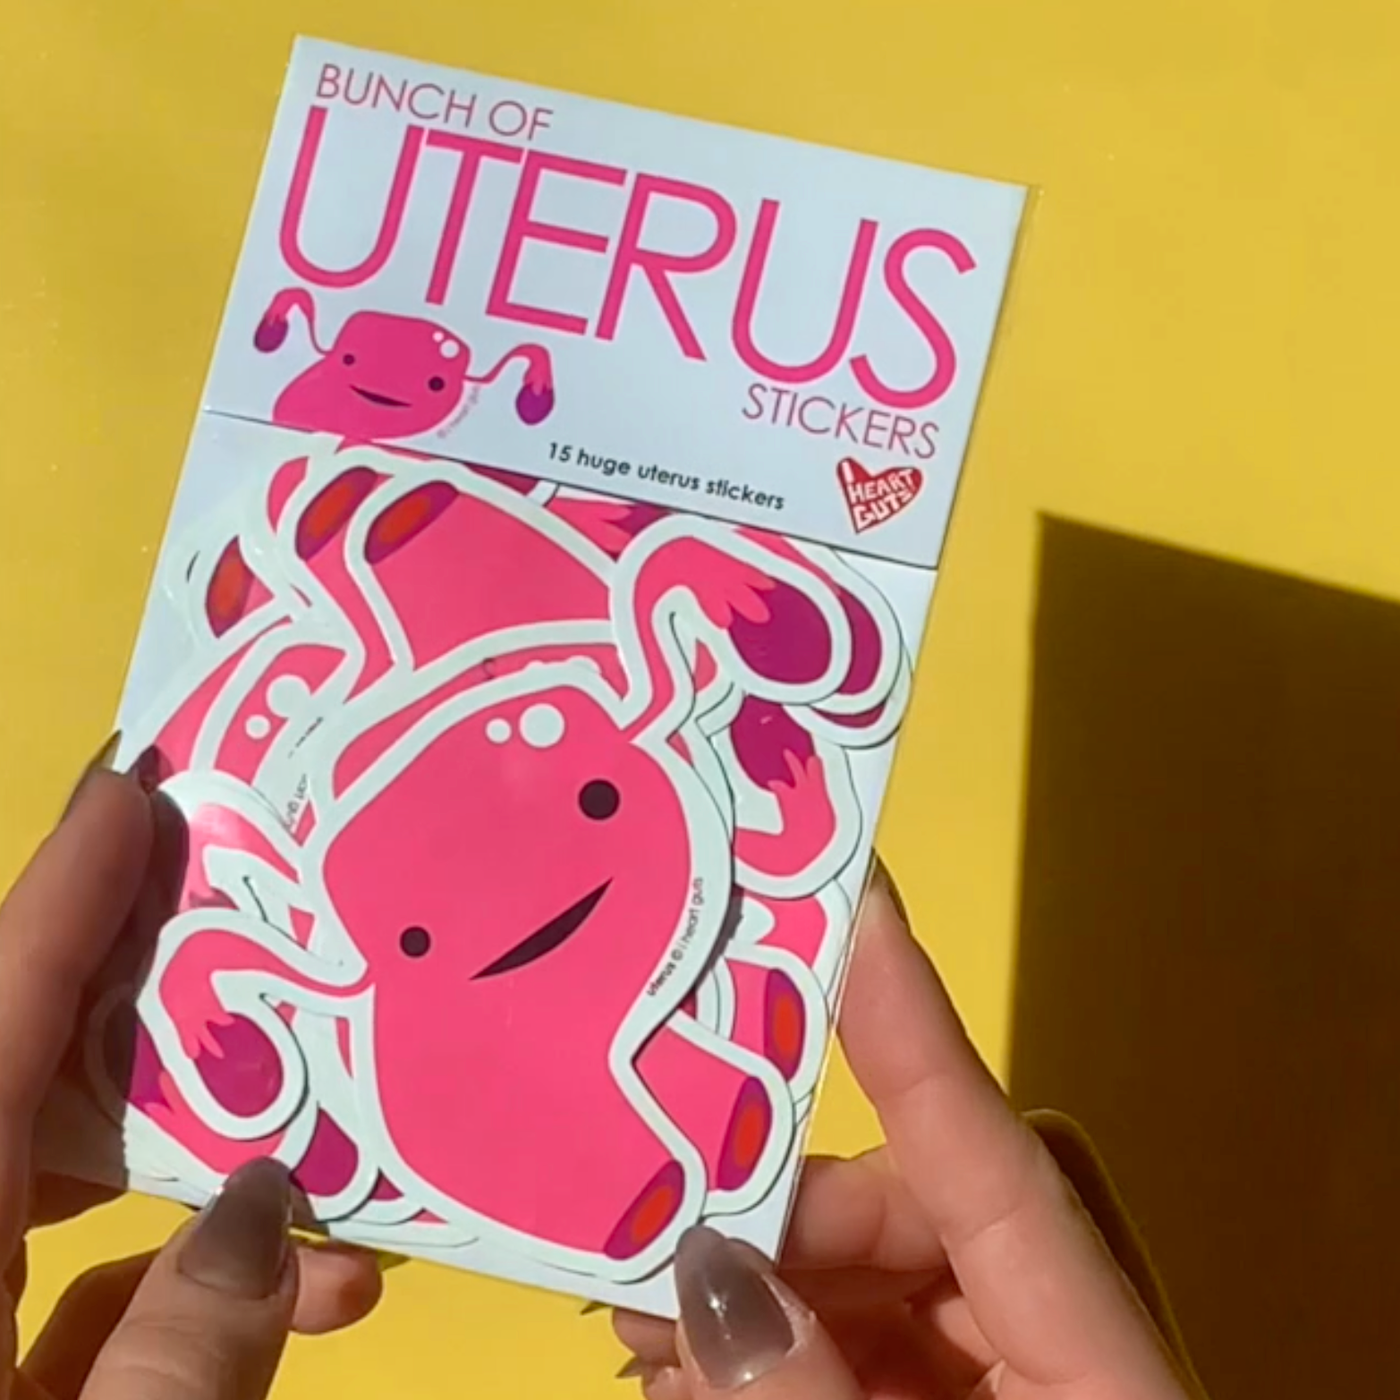 Bunch of Uterus Stickers - 15 Uterus Stickers